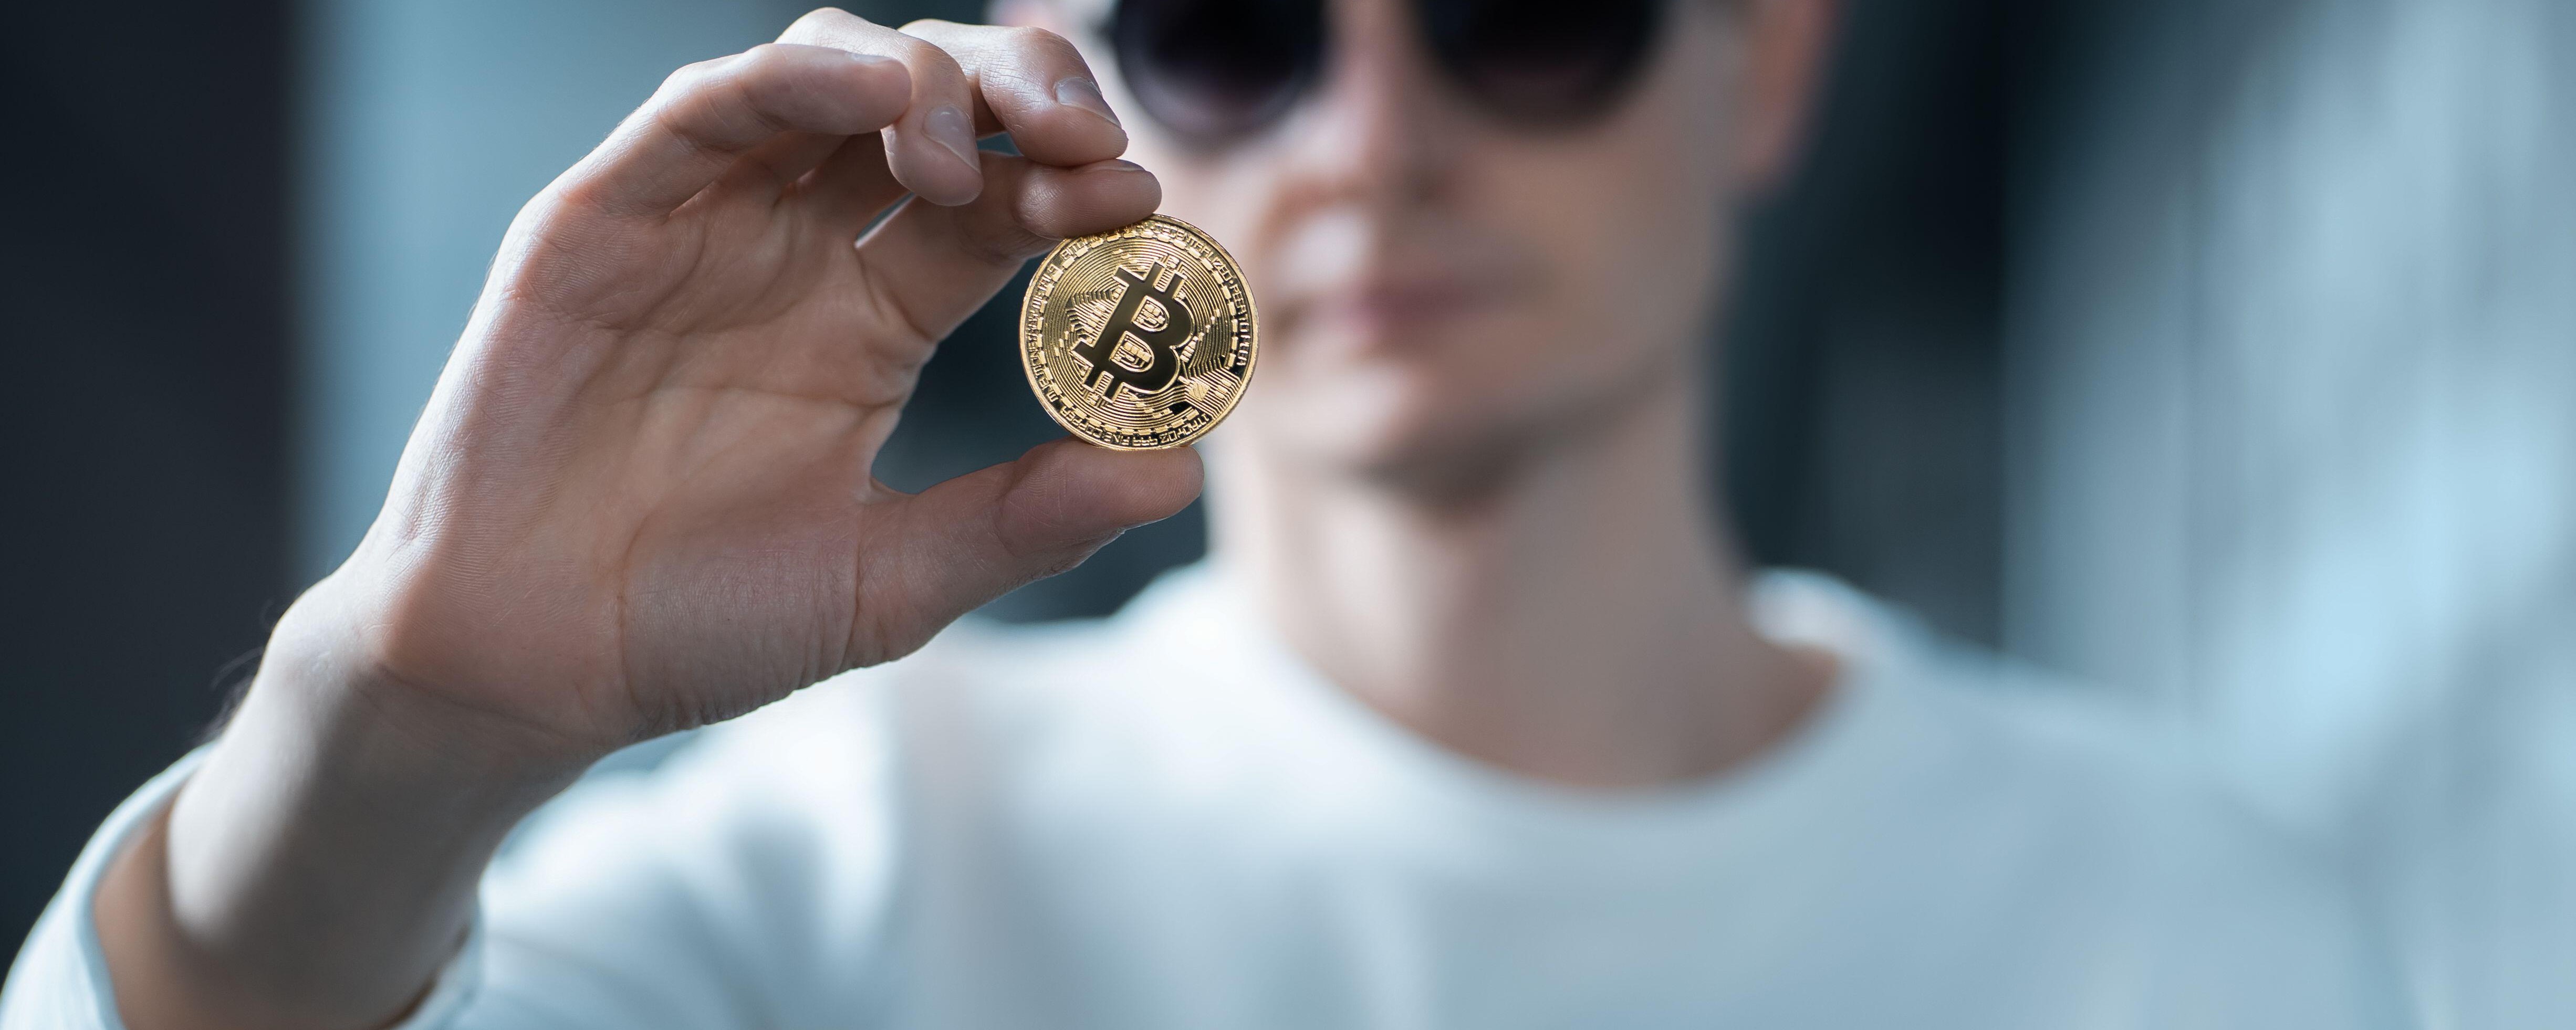 câți bani poți câștiga cu mineritul bitcoin